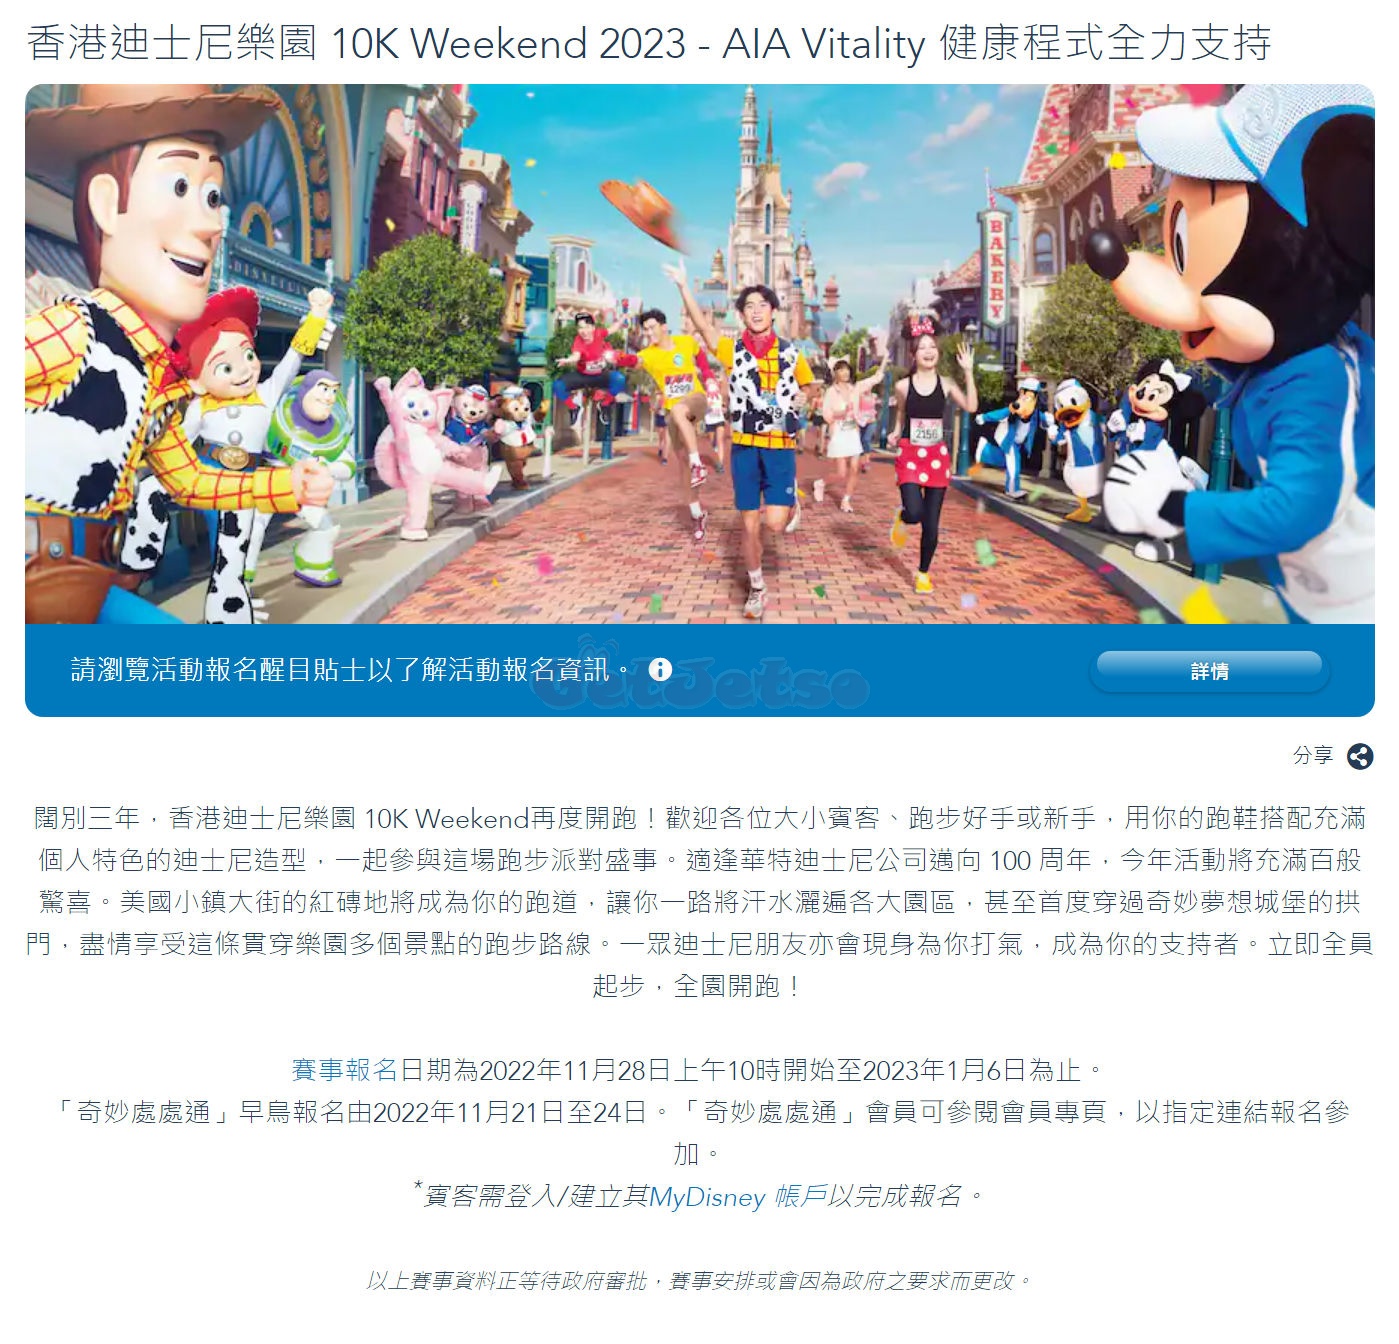 香港迪士尼樂園10K Weekend 2023 公開報名(22年11月28日起)圖片3